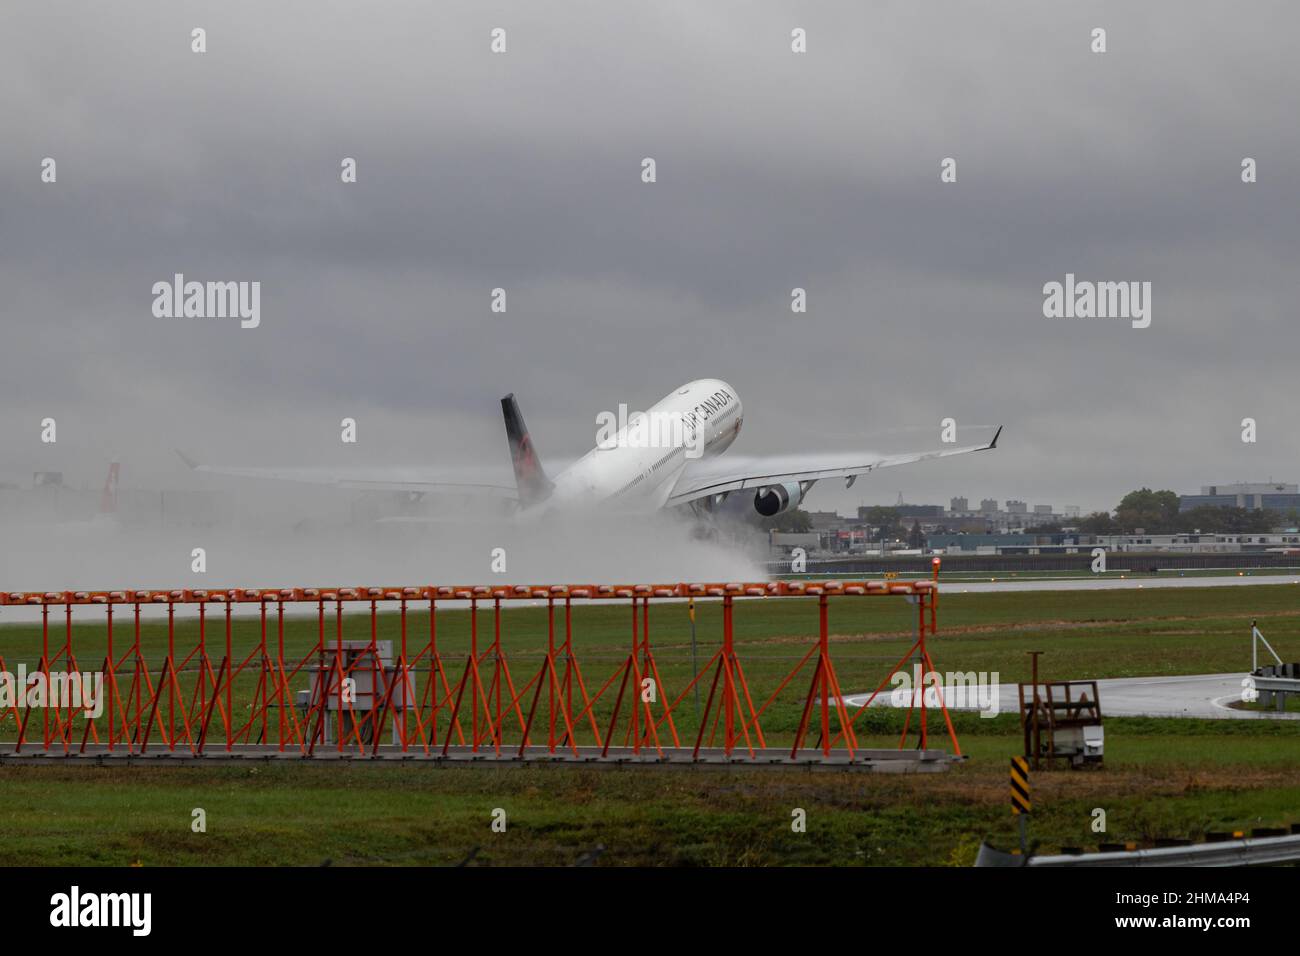 Montréal, Québec, Canada 10-02-2021: Airbus d'Air Canada A330-300 décollage de Montréal lors d'un après-midi pluvieux. INSCRIPTION C-GEFA, FIN 939. Banque D'Images